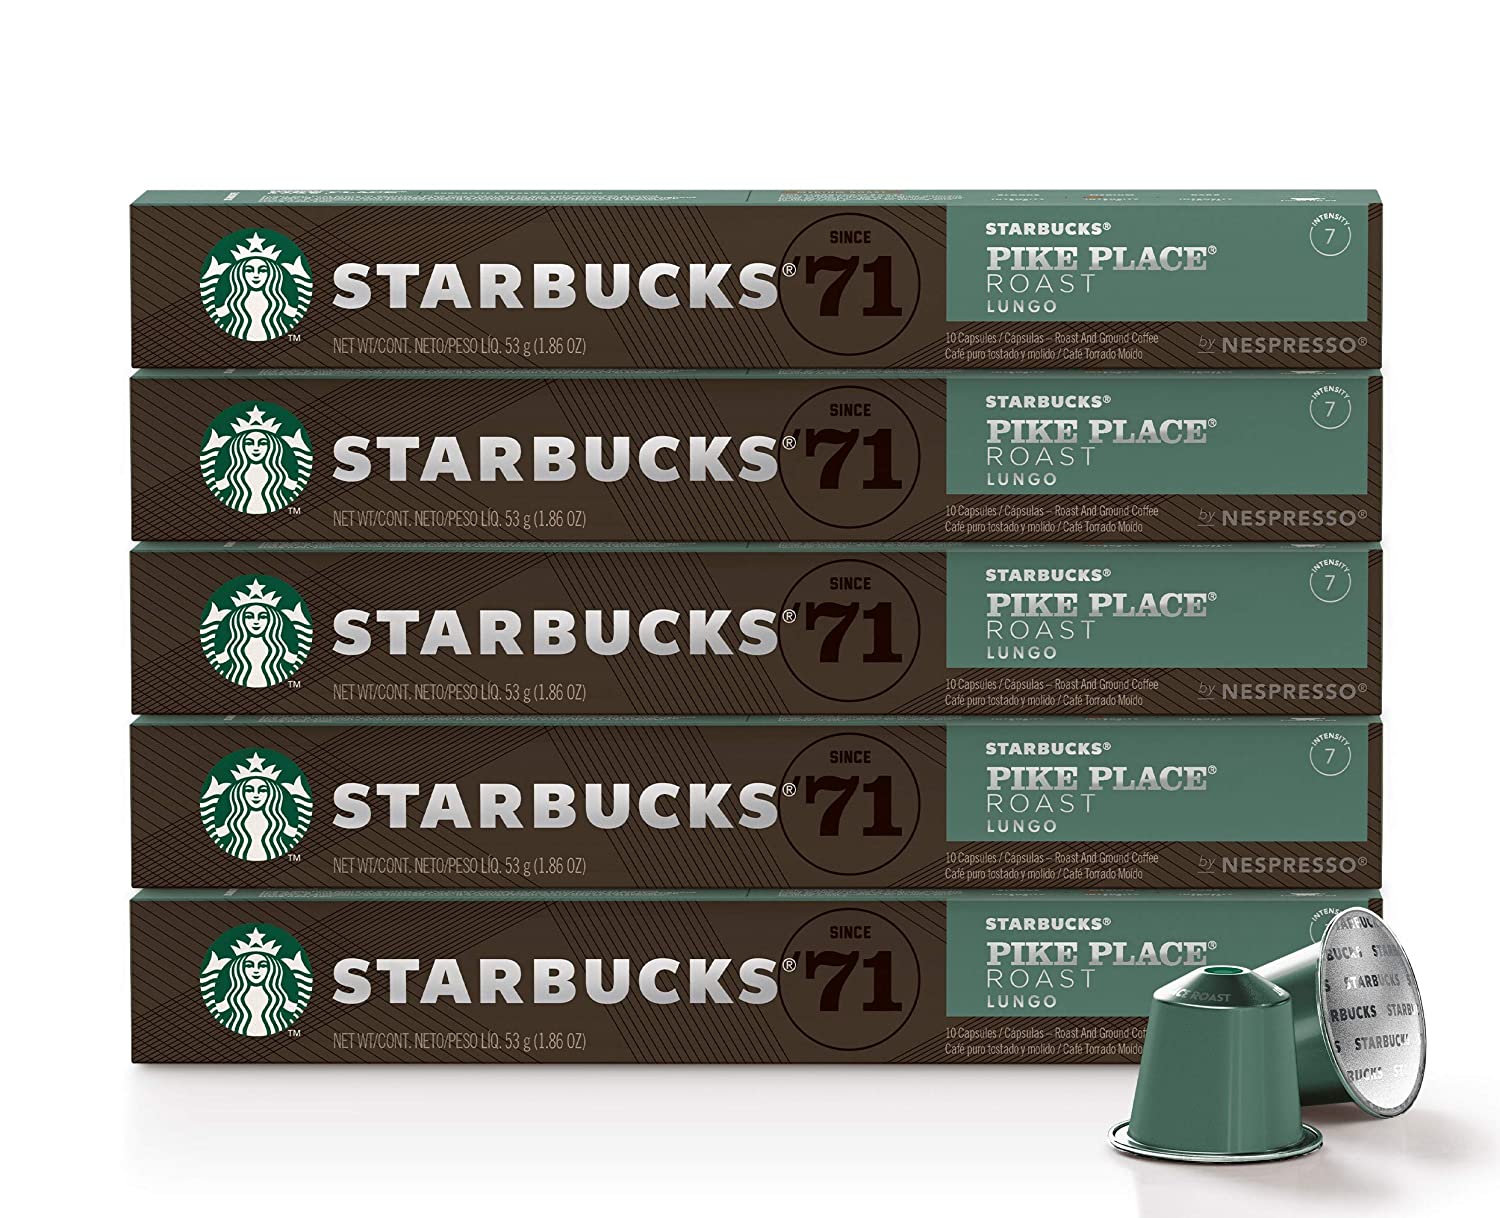 [ออกใบกำกับภาษีได้] Starbucks Capsule Nespresso กาแฟแคปซูล สตาร์บัคส์ ใช้กับเครื่องชงกาแฟ Nespresso, Xiaomi ของแท้ ส่งเร็ว  flavour Pike Place